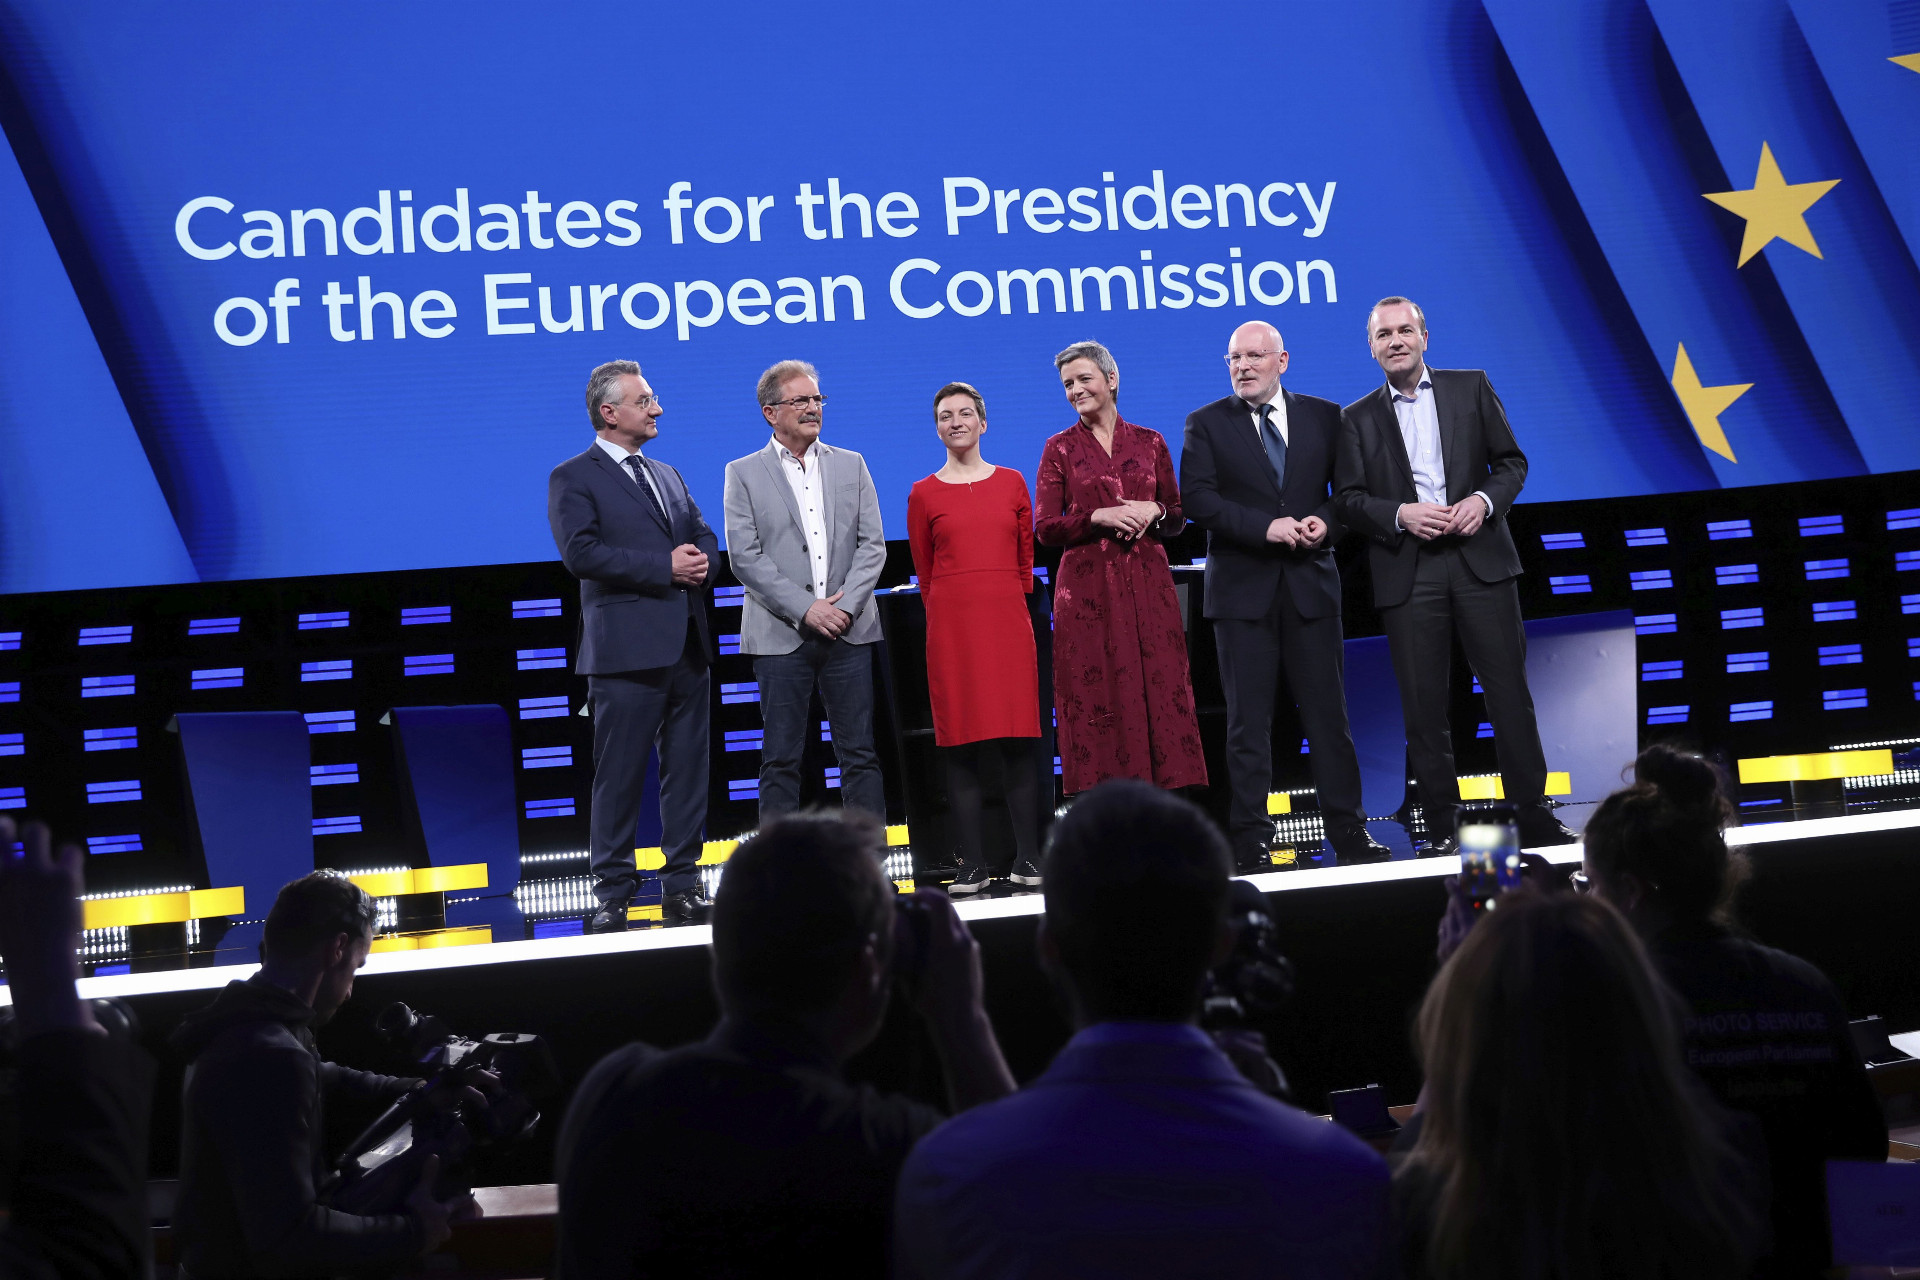 Na Slovensku je záujem o eurovoľby nízky. Na snímke (zľava) kandidáti na šéfa Európskej komisie Jan Zahradil, Nico Cué, Ska Kellerová, Margrethe Vestagerová, Frans
Timmermans a Manfred Weber pred začiatkom predvolebnej debaty.